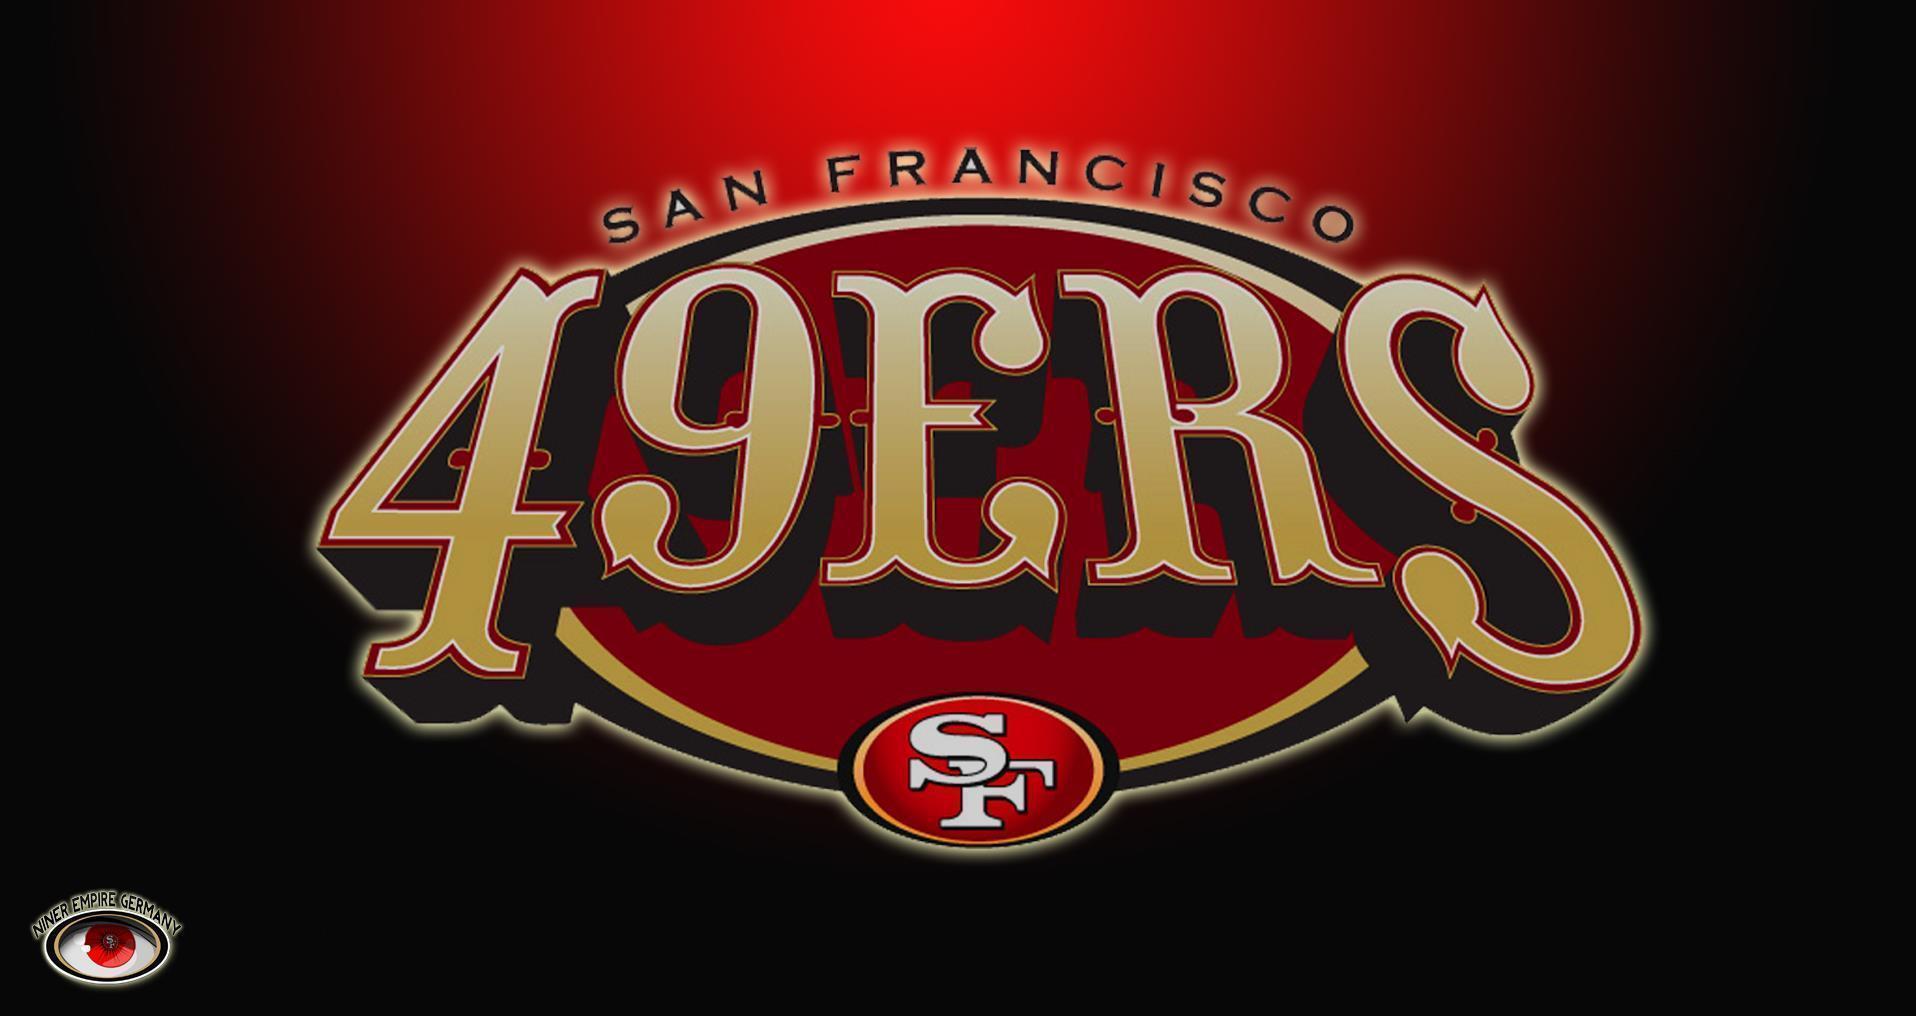 San Francisco 49ers Wallpaper 2014. Sky HD Wallpaper